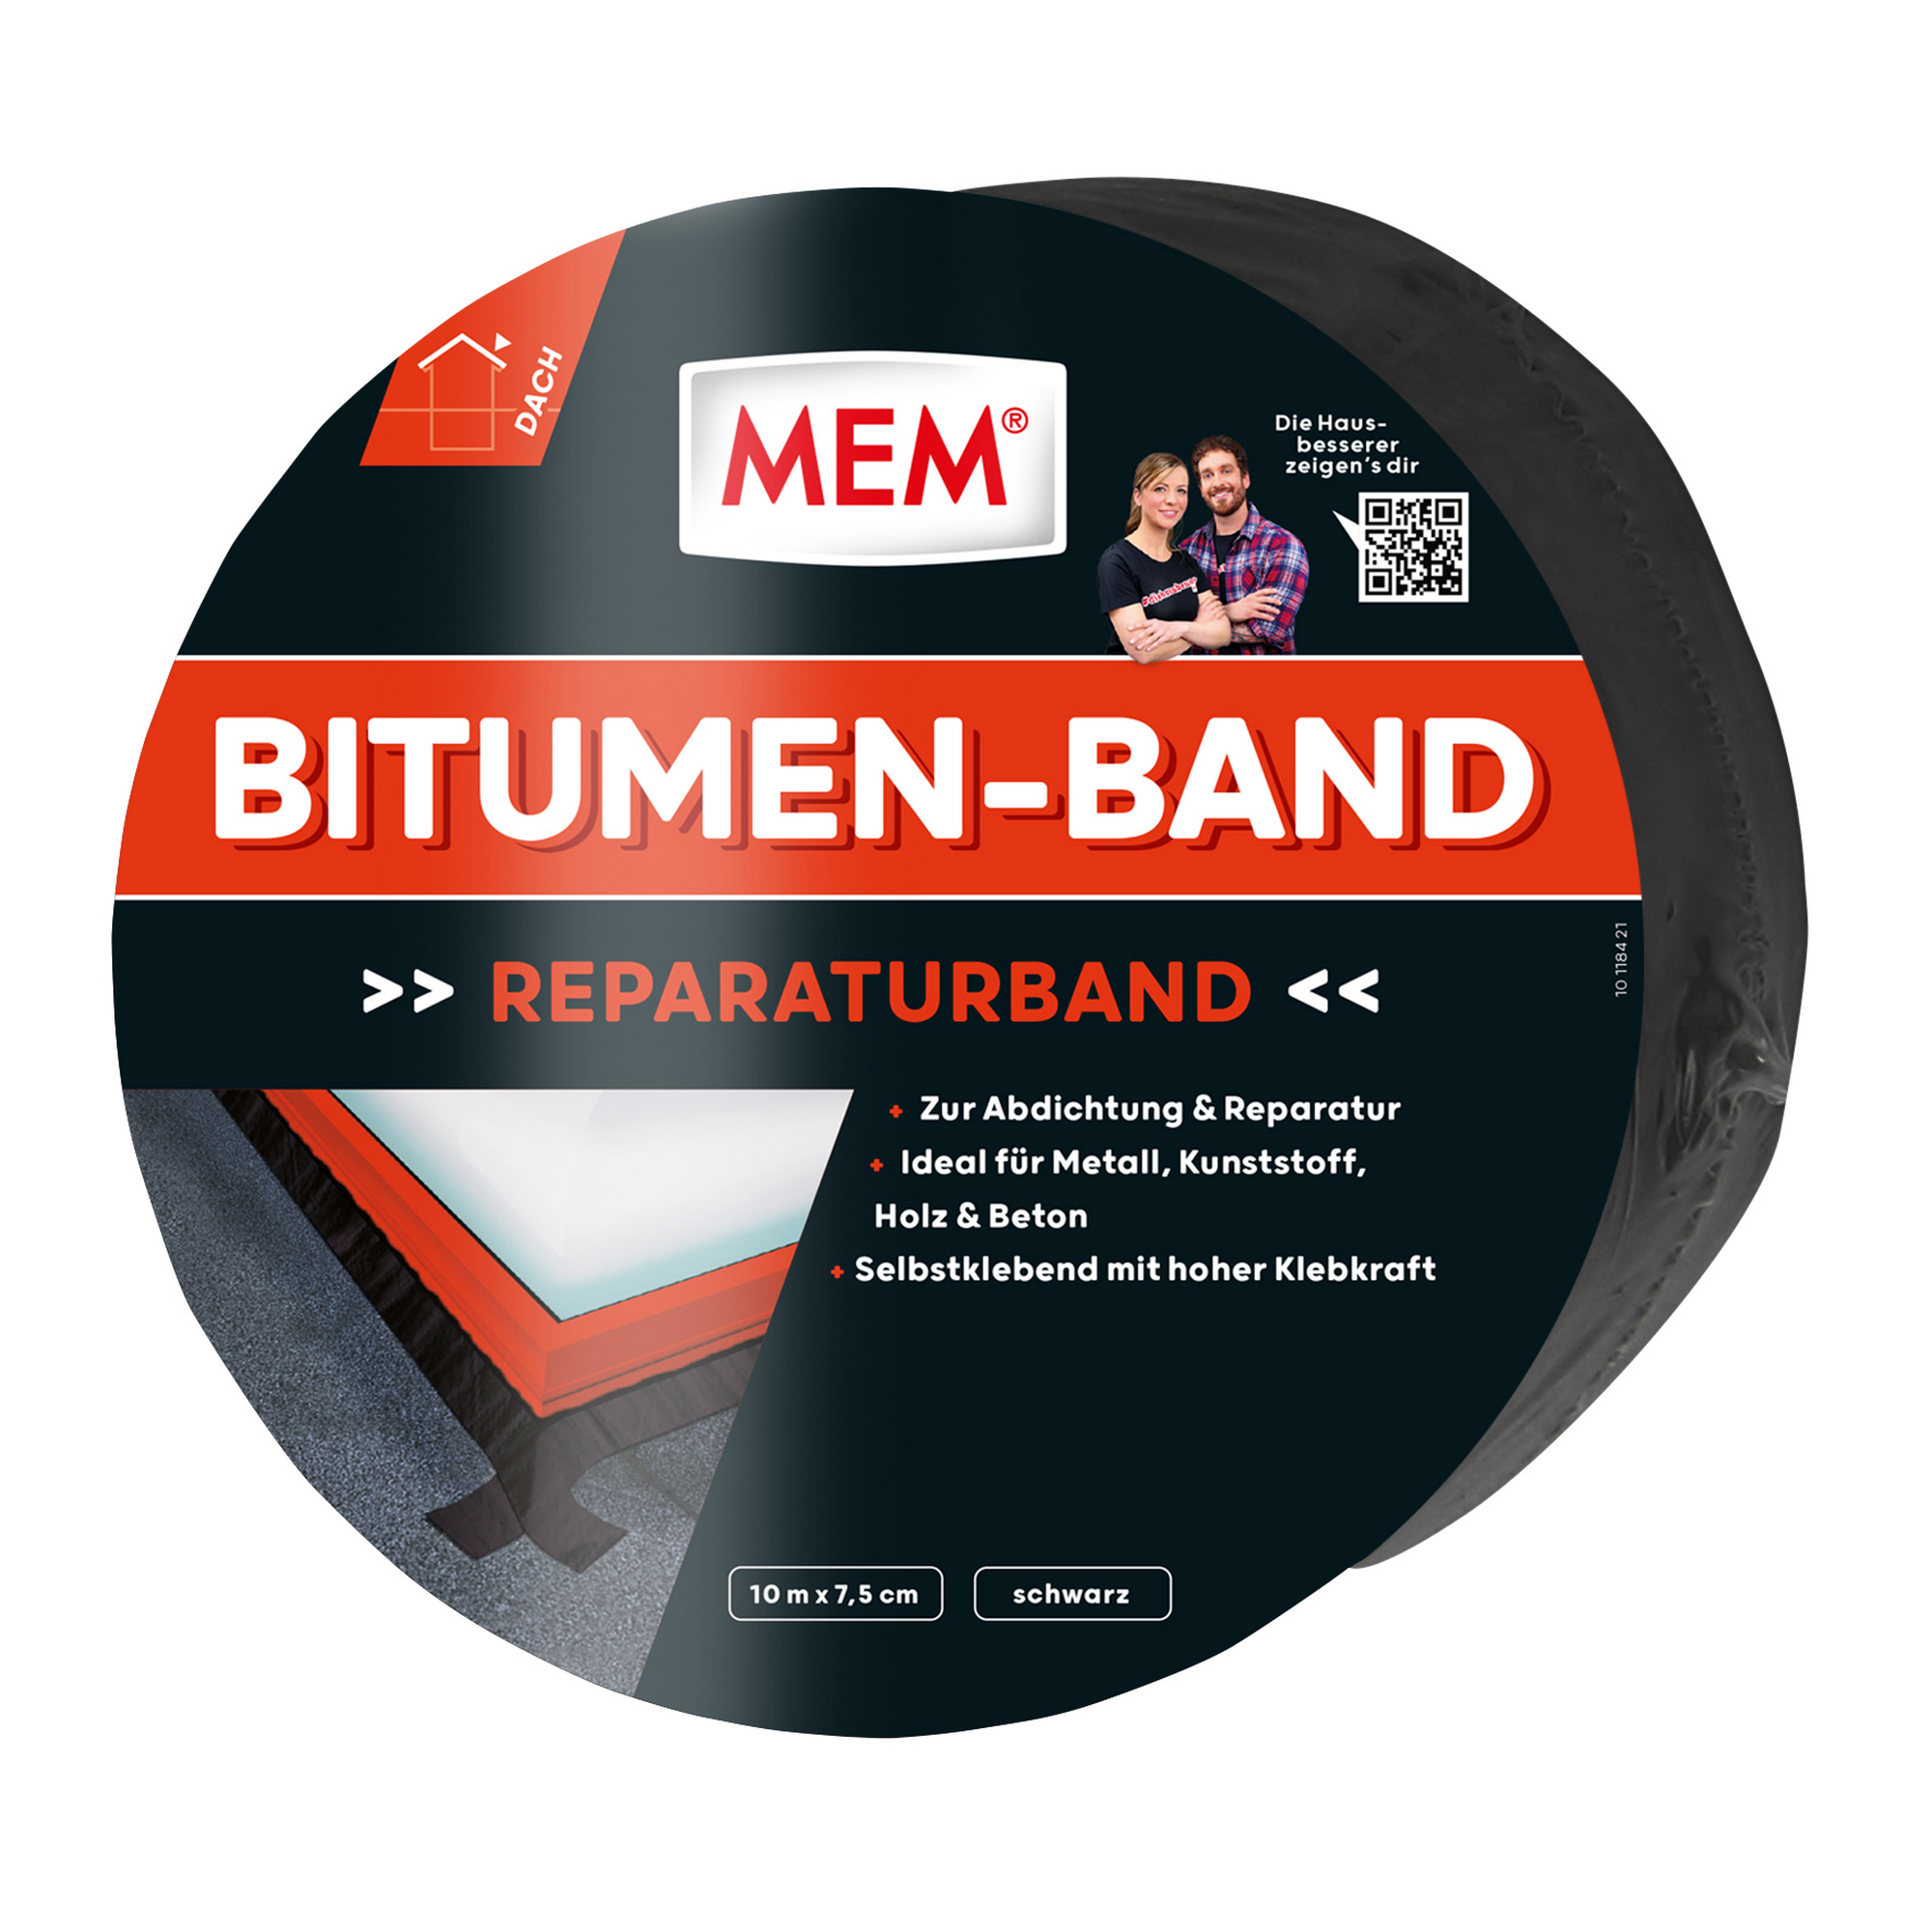 MEM Bitumen-Band schwarz 7,5 cm x 10 m